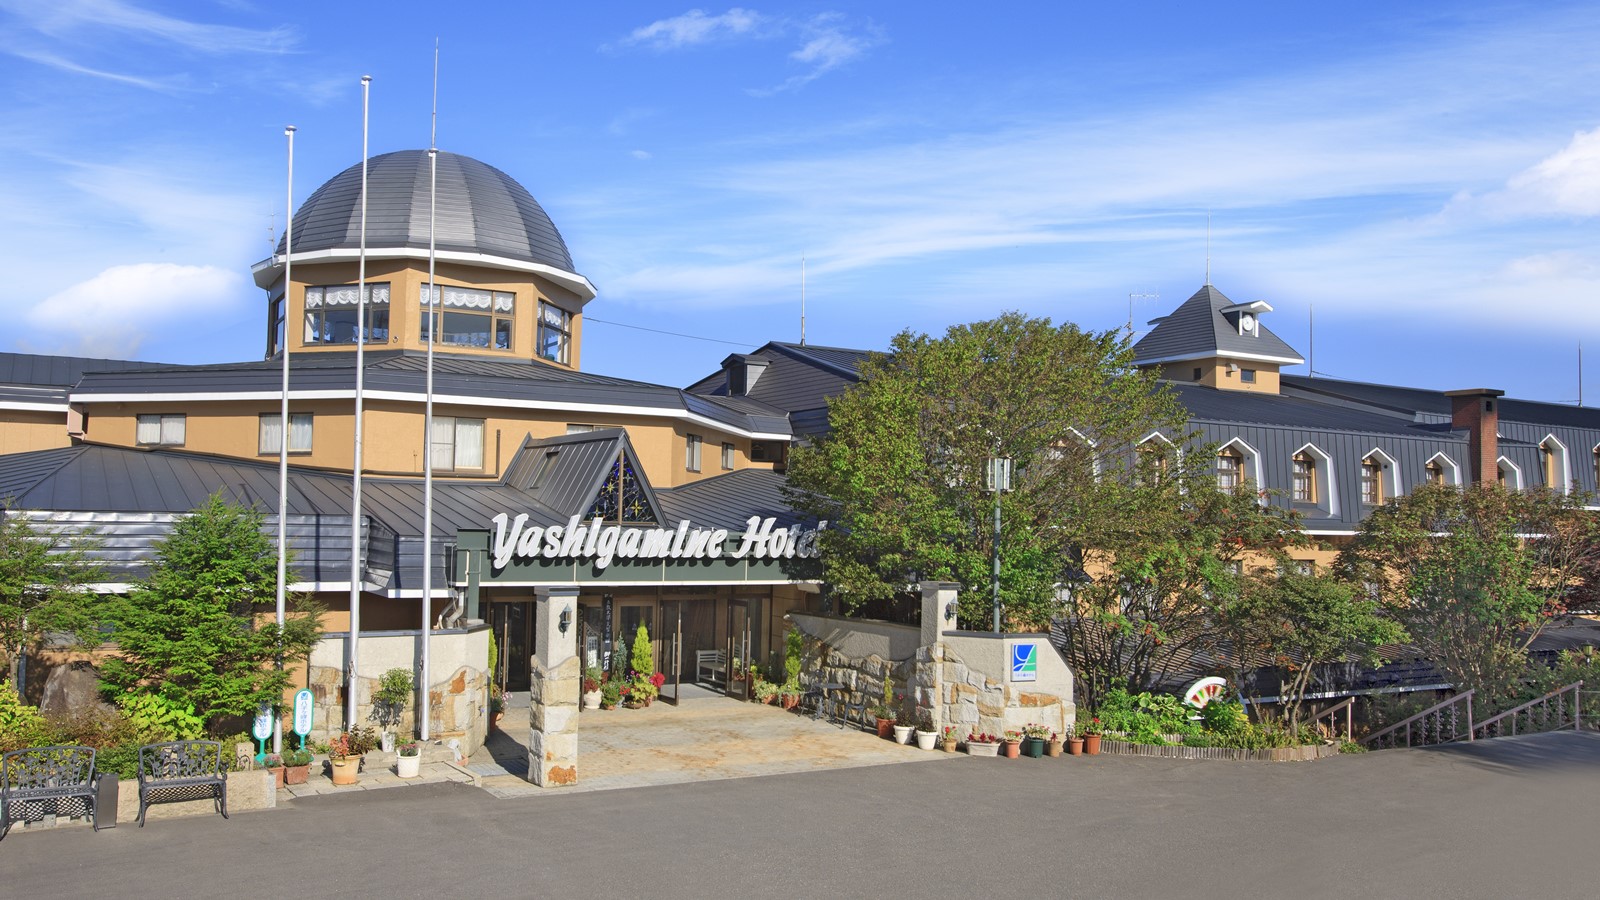 Yashigamine Hotel